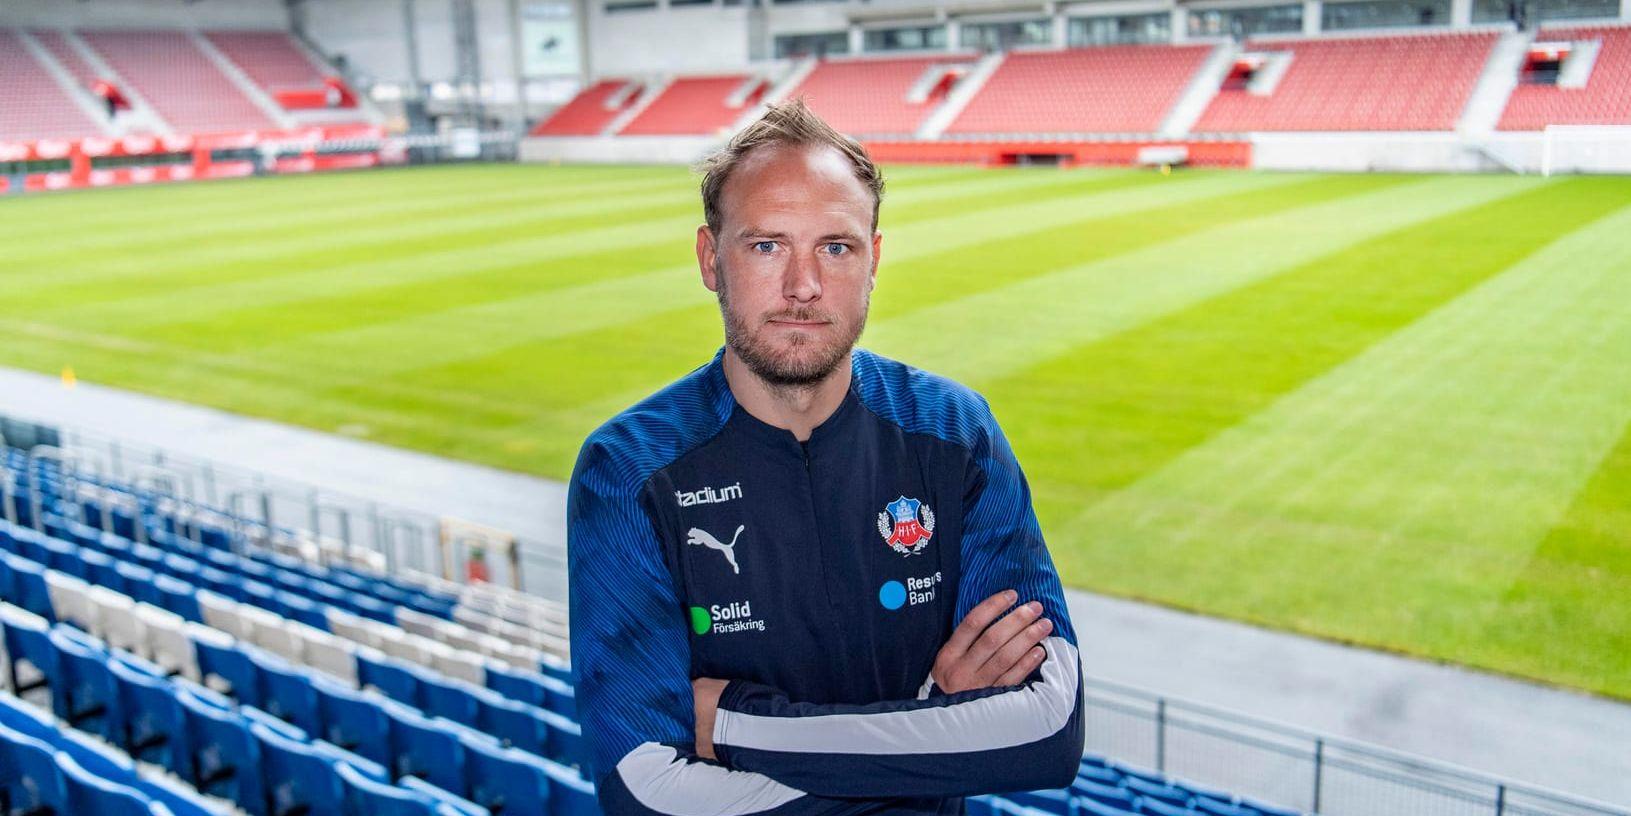 "Jag känner att det kan bli ett bra avslut i landslaget", säger Andreas Granqvist om EM-kvalet och ett eventuellt slutspel 2020.